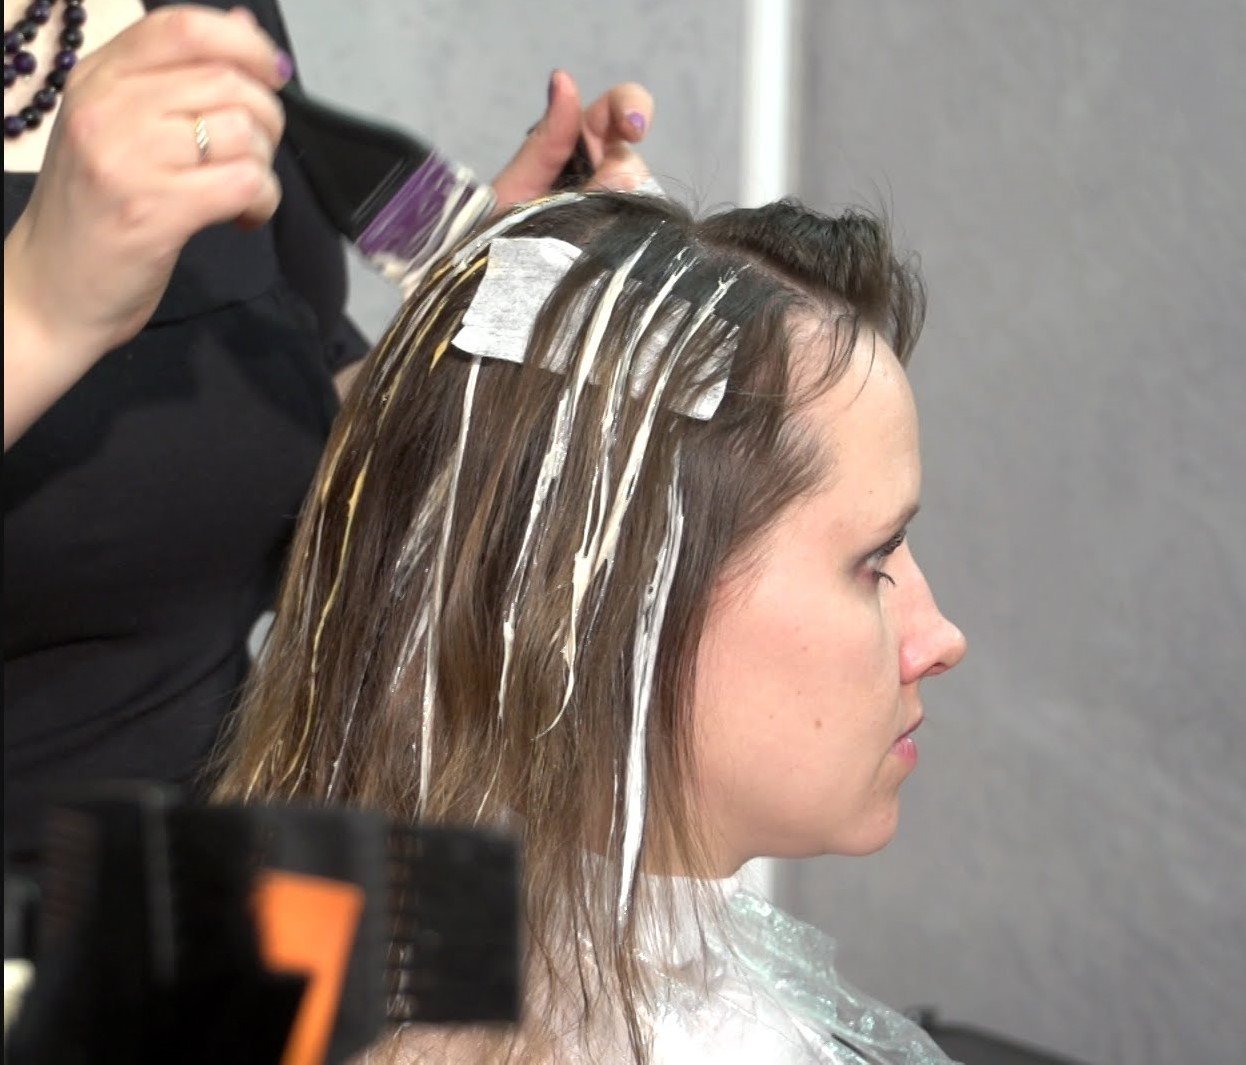 Как выполняется мелирование волос техникой “зебра”? фото и описание